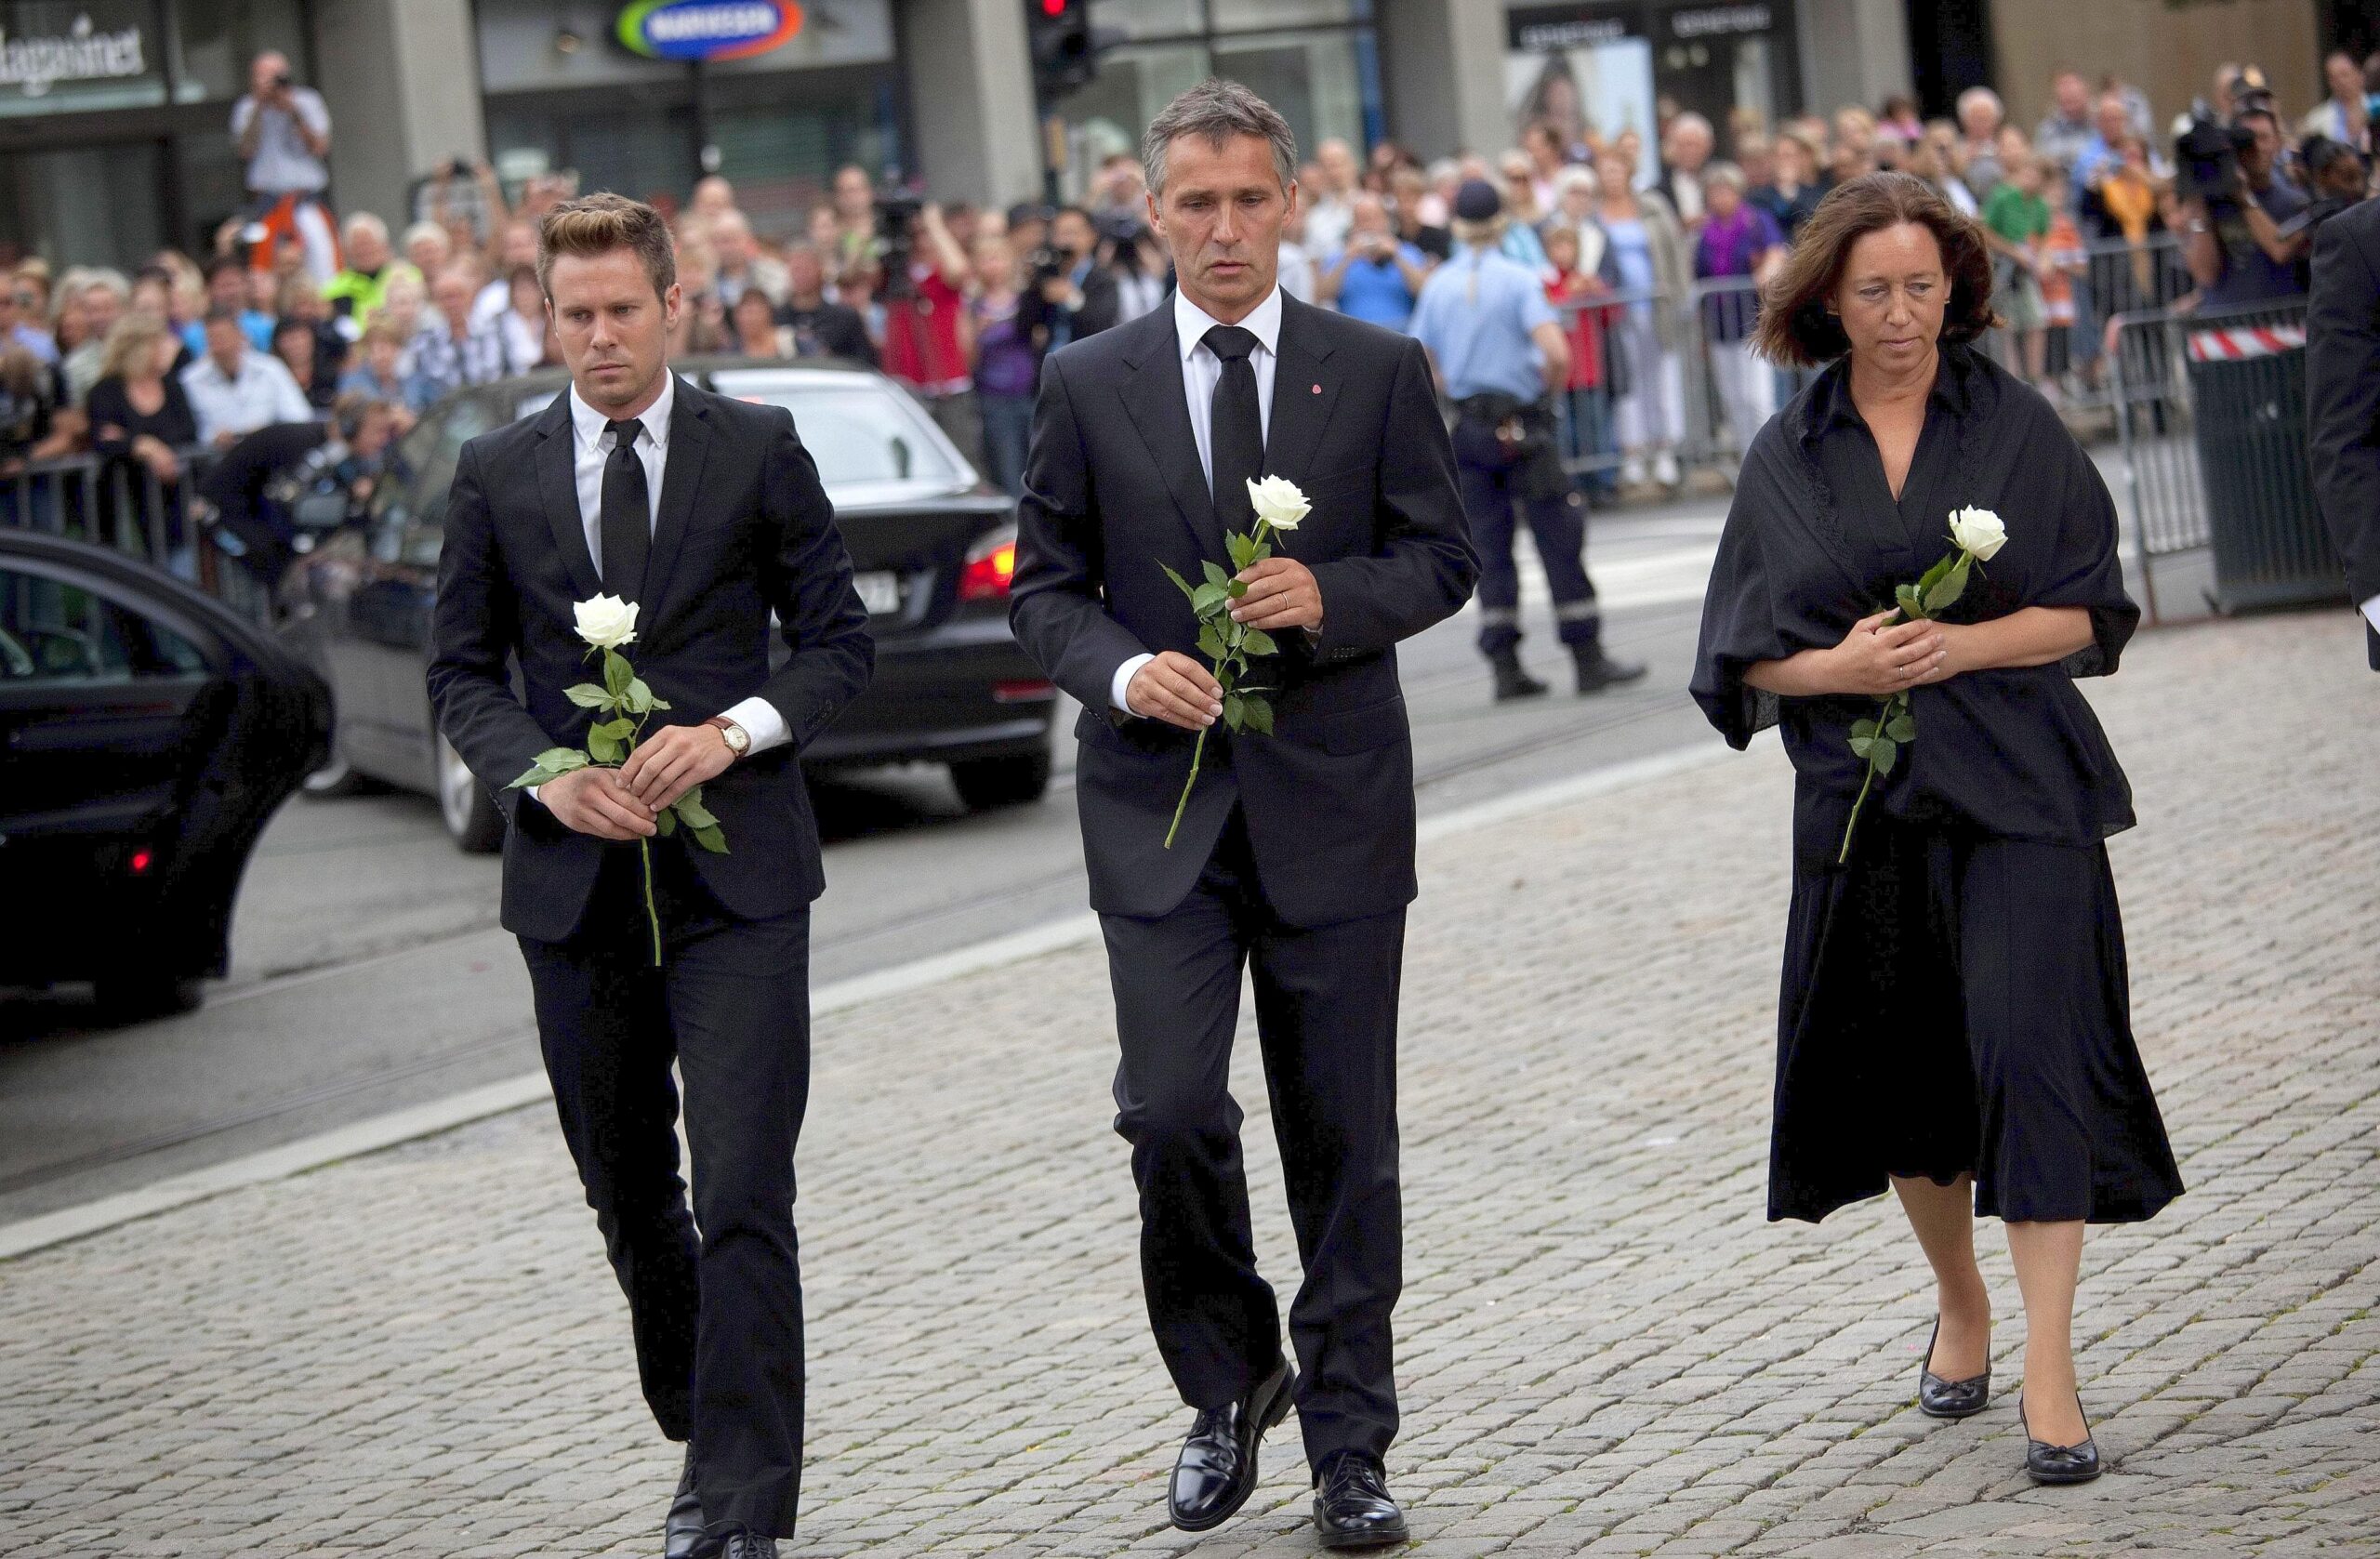 Ein schwerer Gang: Ministerpräsident Stoltenberg, seine Frau Ingrid Schulerud und Eskil Pedersen, Chef der sozialdemokratischen Jugendorganisation, auf dem Weg zur Trauerfeier in Oslo.